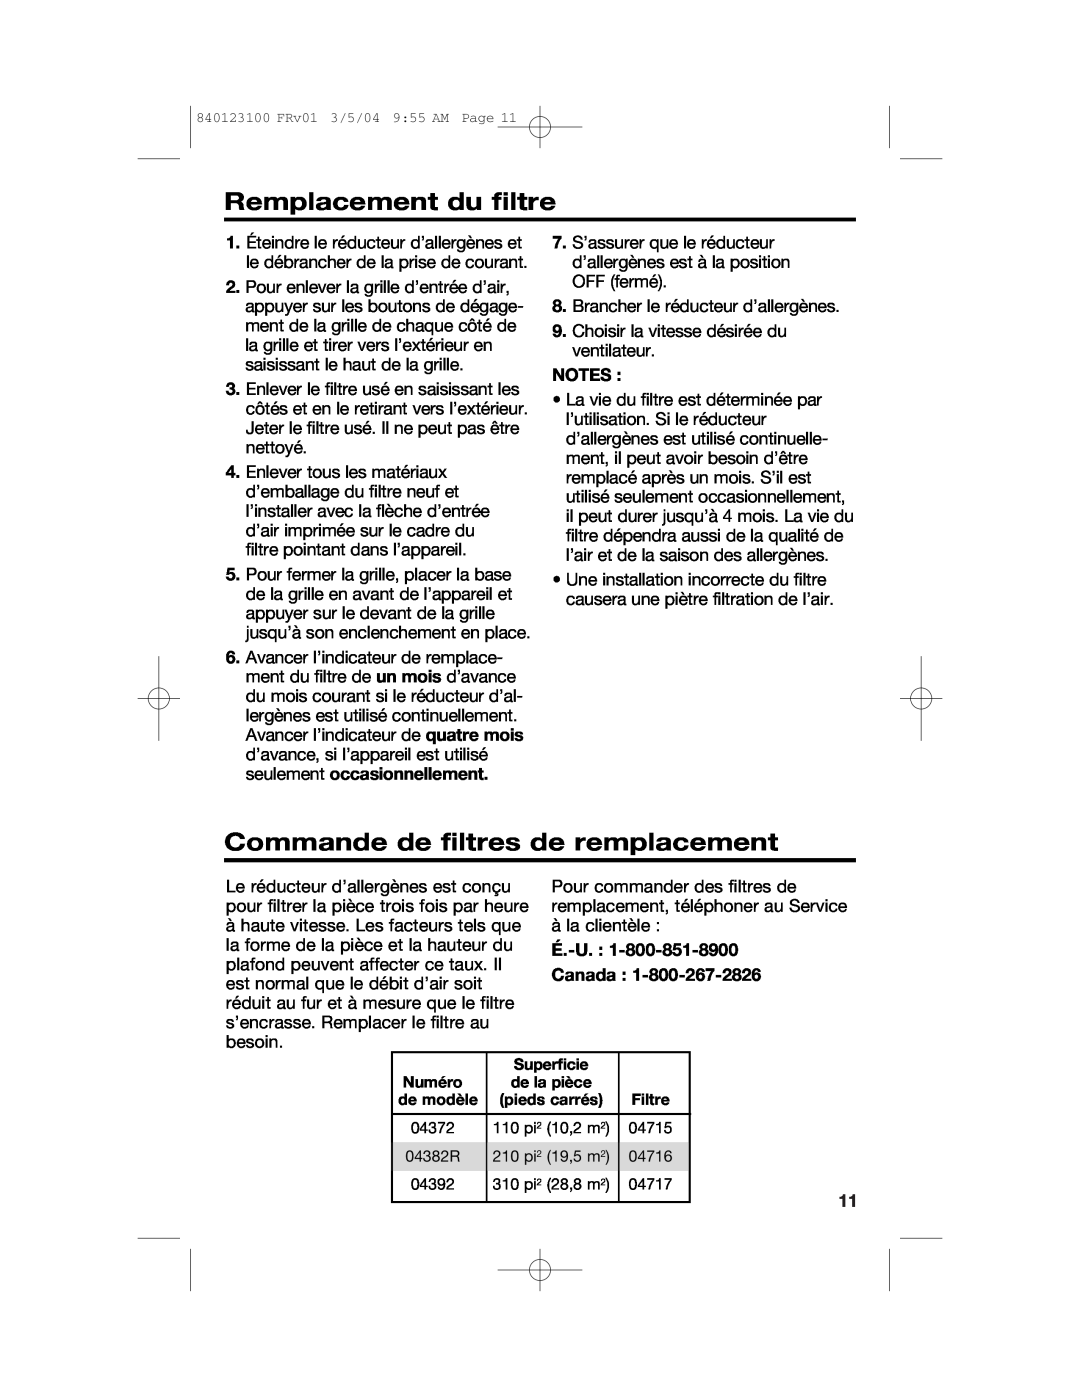 Hamilton Beach 840123100 manual Remplacement du filtre, Commande de filtres de remplacement, É.-U. : Canada, Notes 